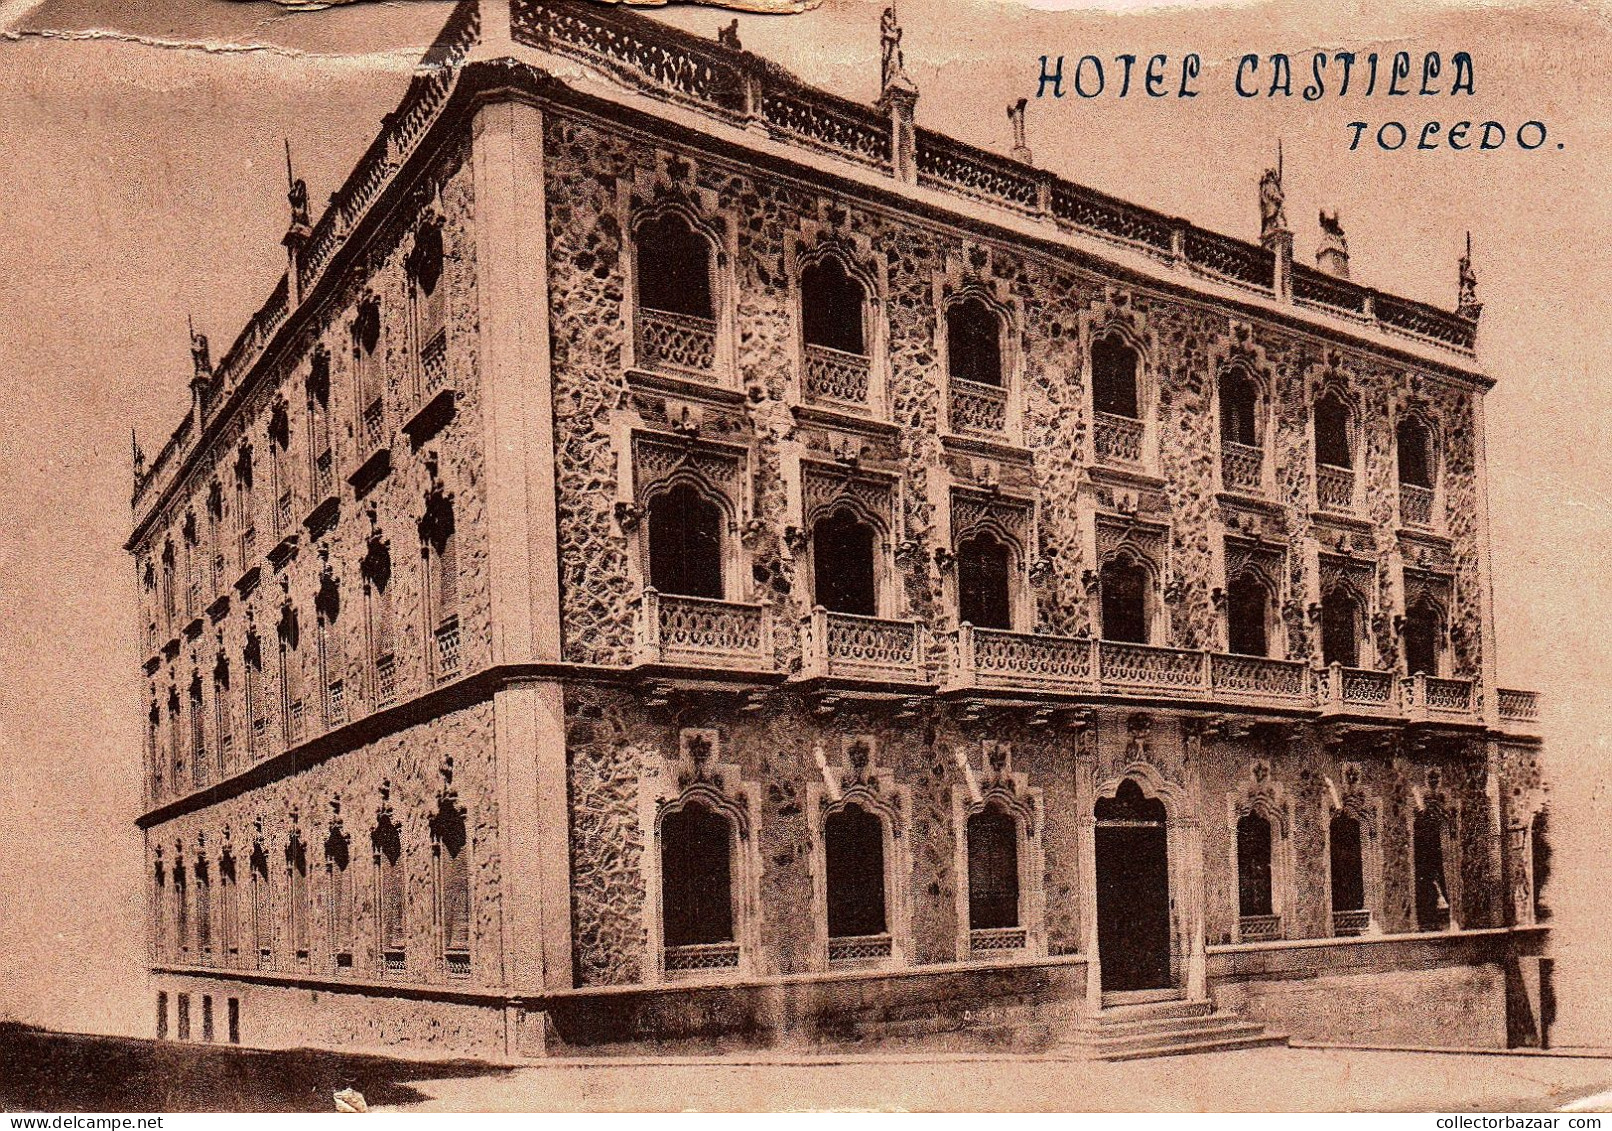 Hotel Castilla Toledo Spain Postcard - Hotels & Restaurants